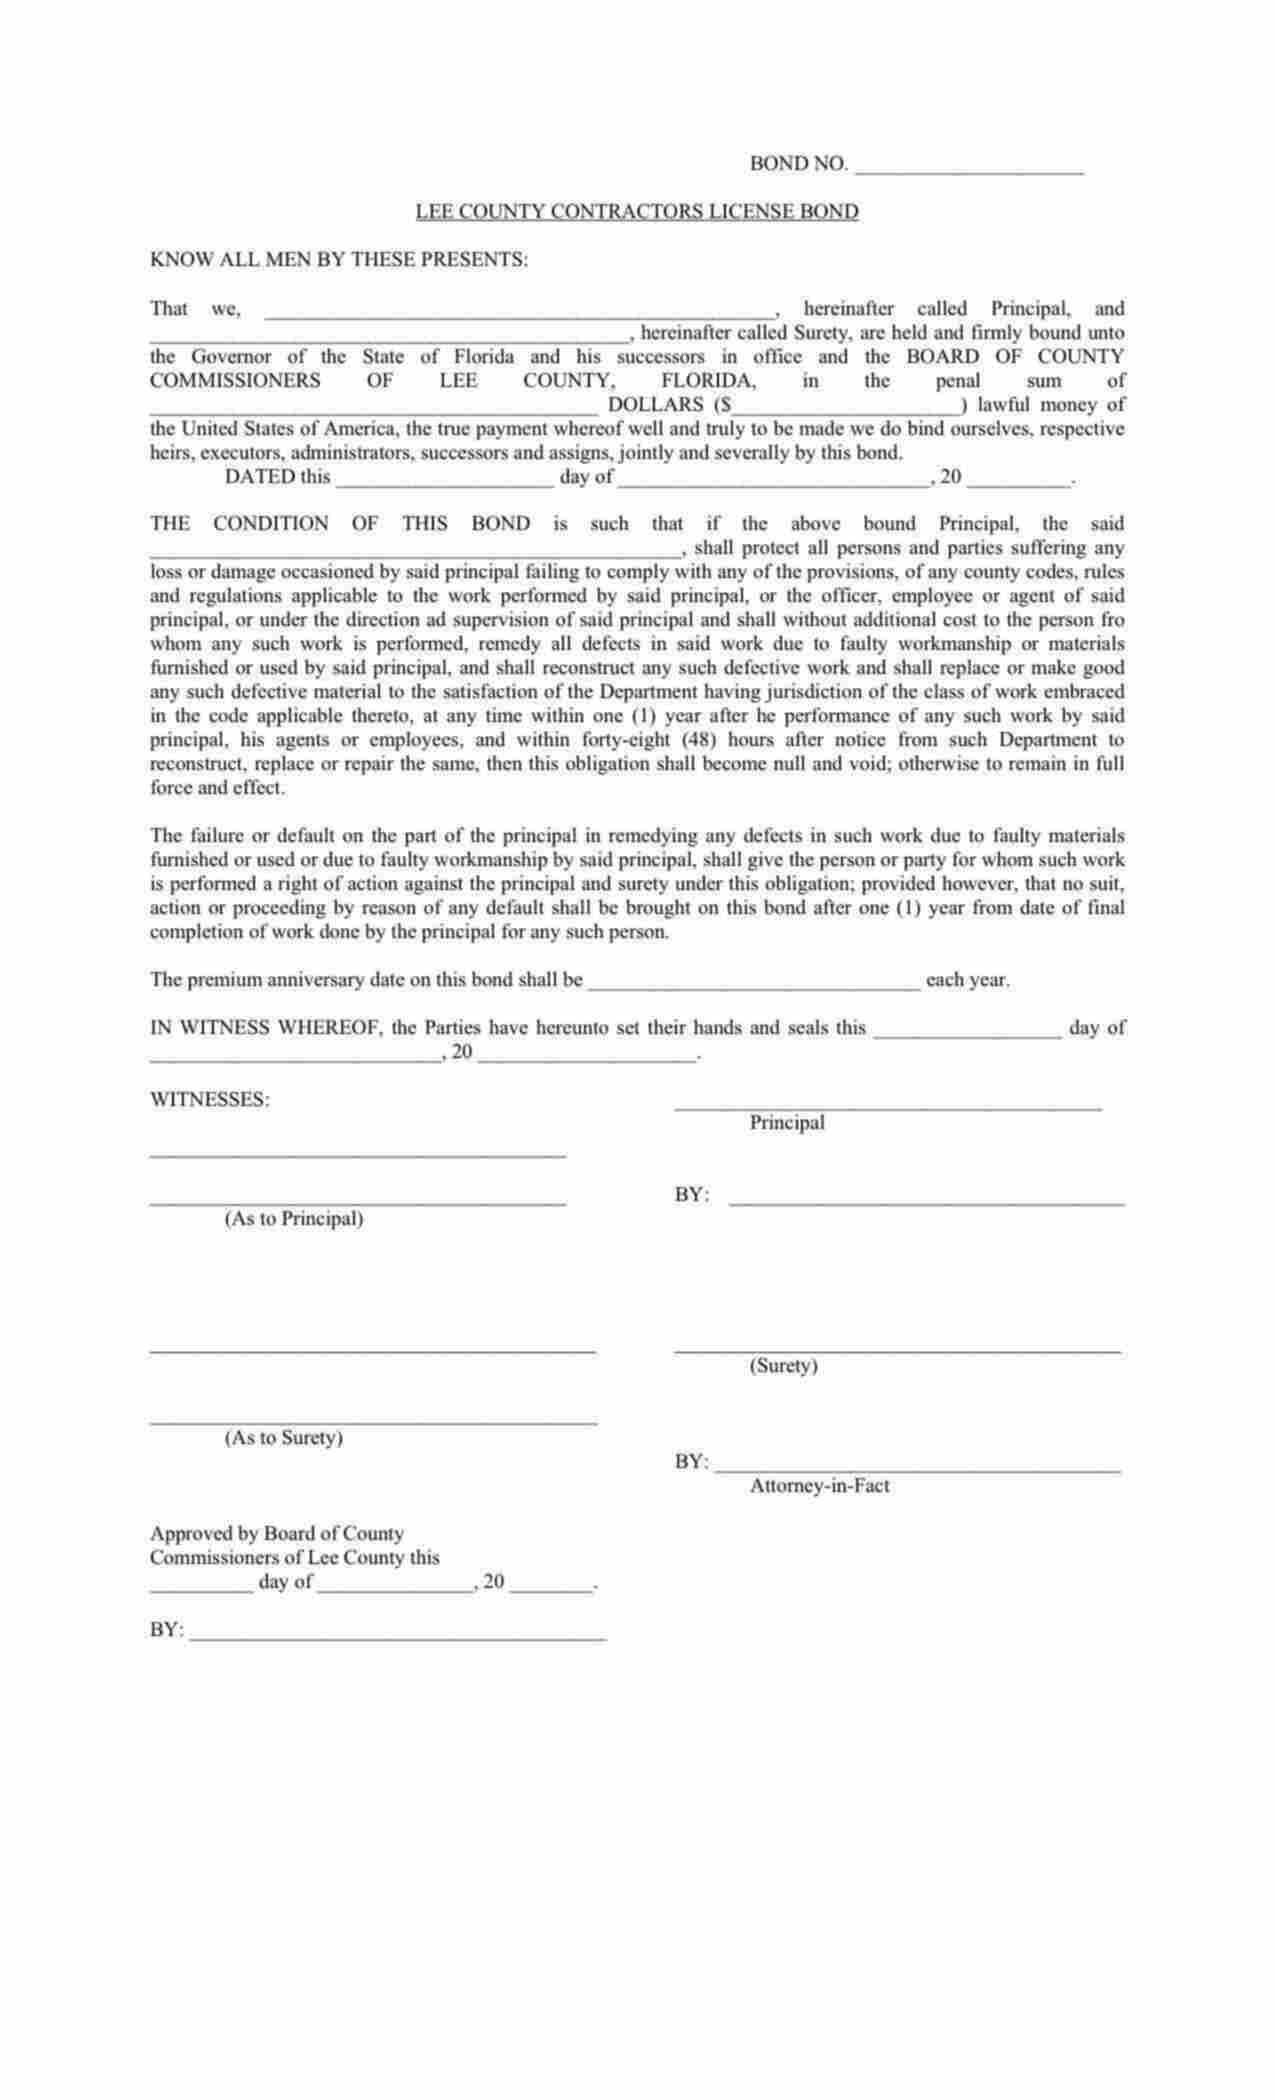 Florida Contractors License Bond Form